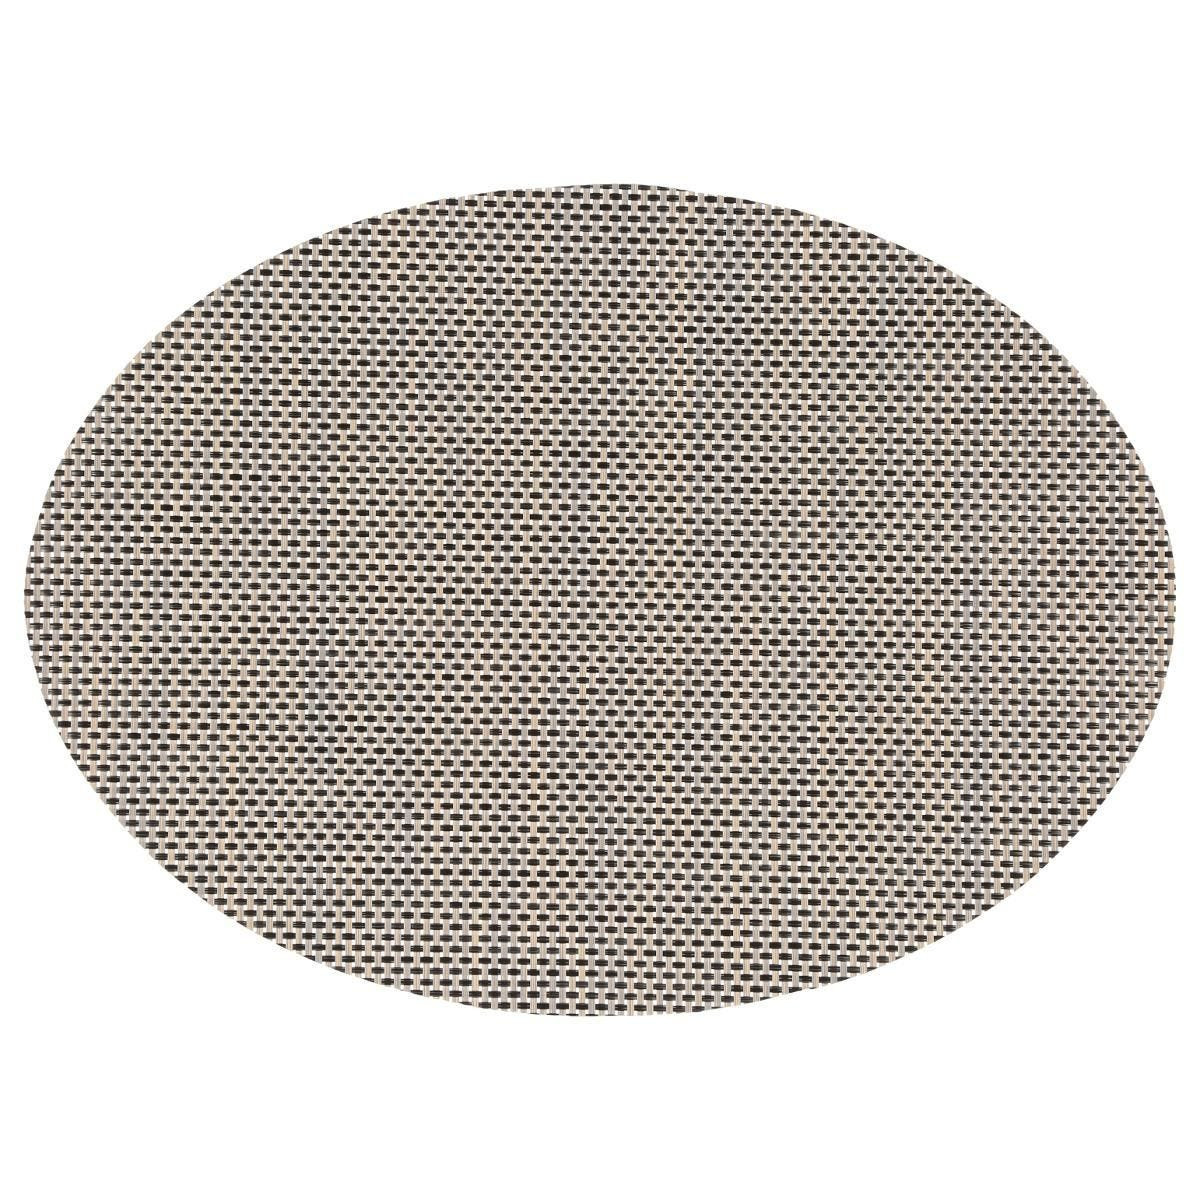 Ovale placemat Maoli zwart-beige kunststof 48 x 35 cm